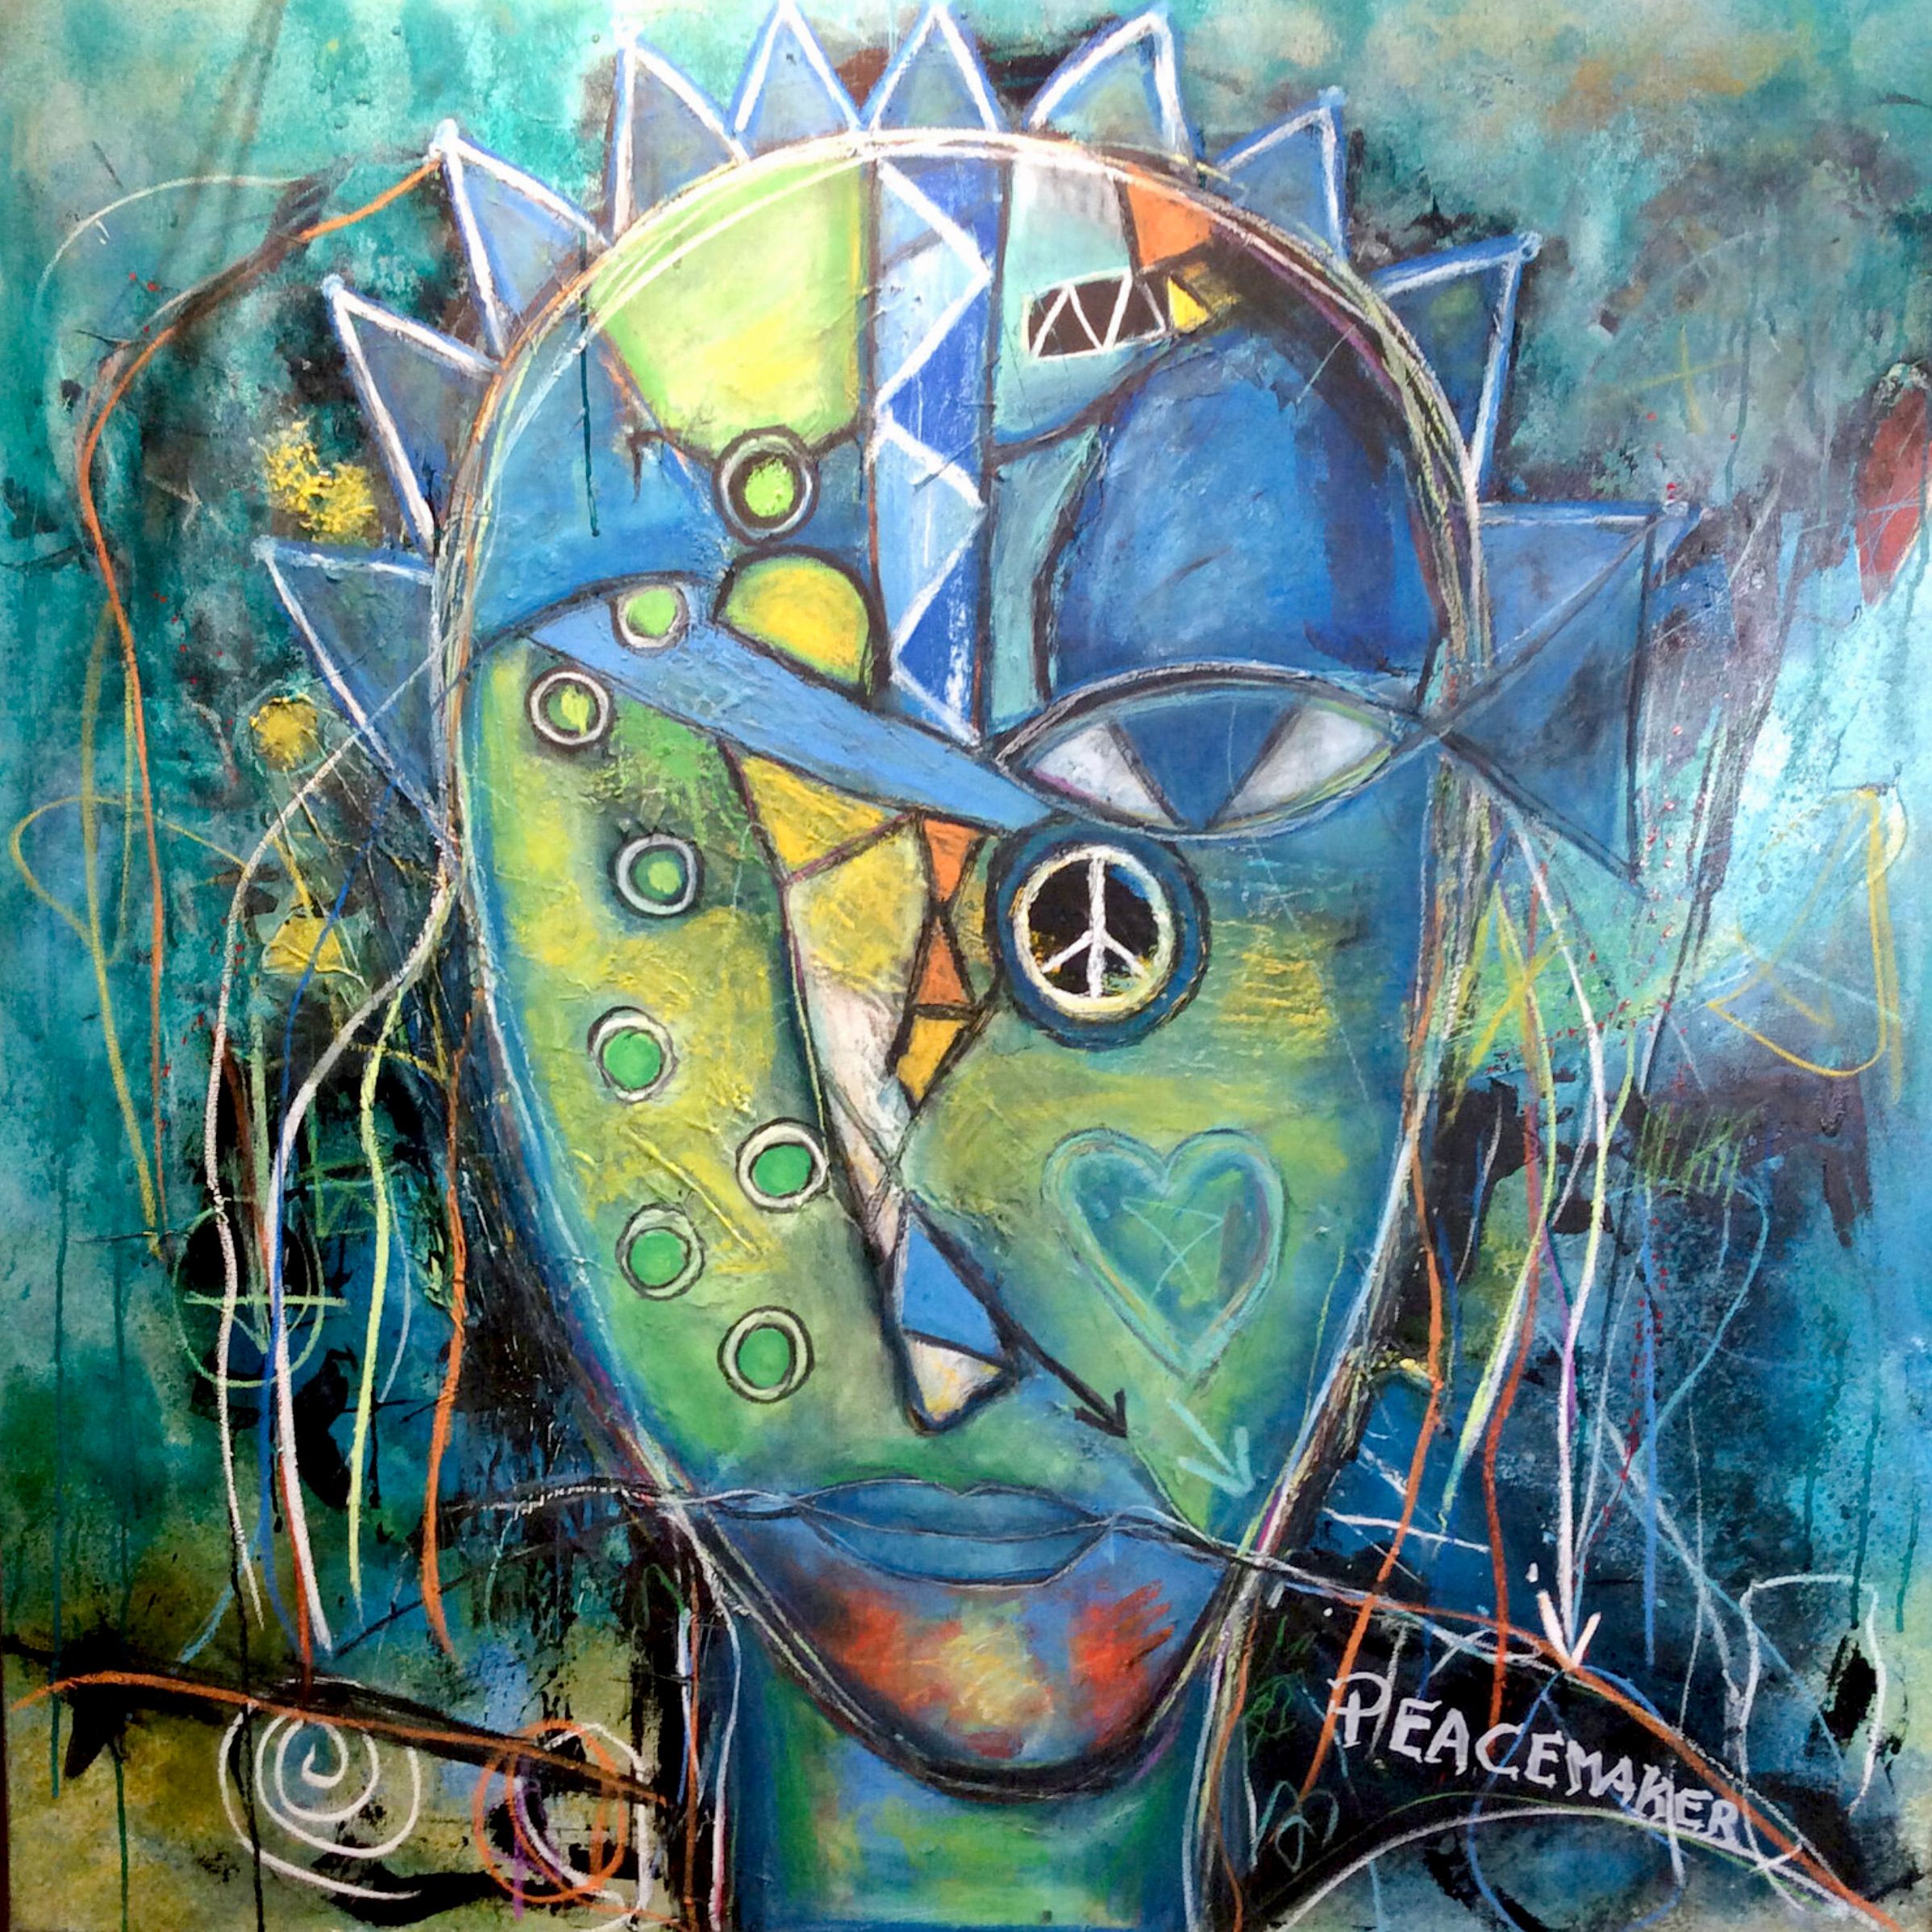 Le portrait expressionniste d'Ilona Schmidt "The Peacemaker...looking for a new job" montre un artisan de la paix en quête de stabilité et de sécurité. La palette de couleurs du tableau se compose de différentes nuances de bleu, de jaune et de vert qui se fondent harmonieusement. Le bleu représente le calme et la stabilité que recherche le pacificateur, tandis que le jaune symbolise l'espoir et l'orientation positive de sa mission... Le vert représente la nature et transmet un sentiment de croissance et de développement.